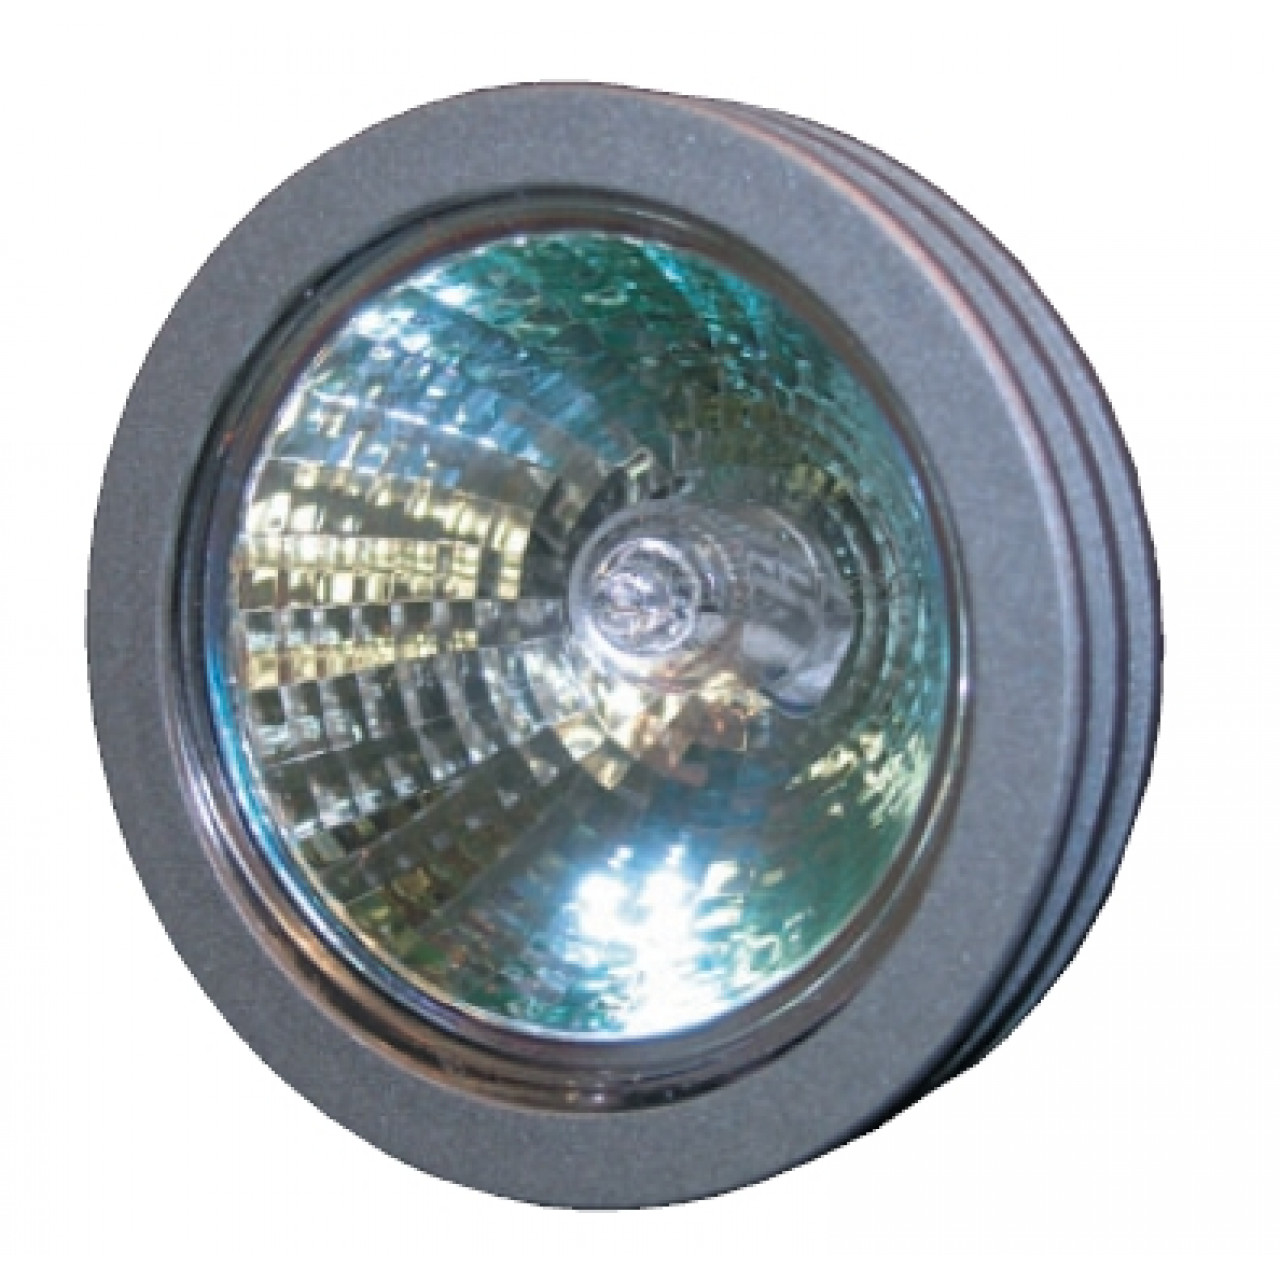 Кольц метал для светильника IL.0005.5 IL.0005.5 METAL RINGS